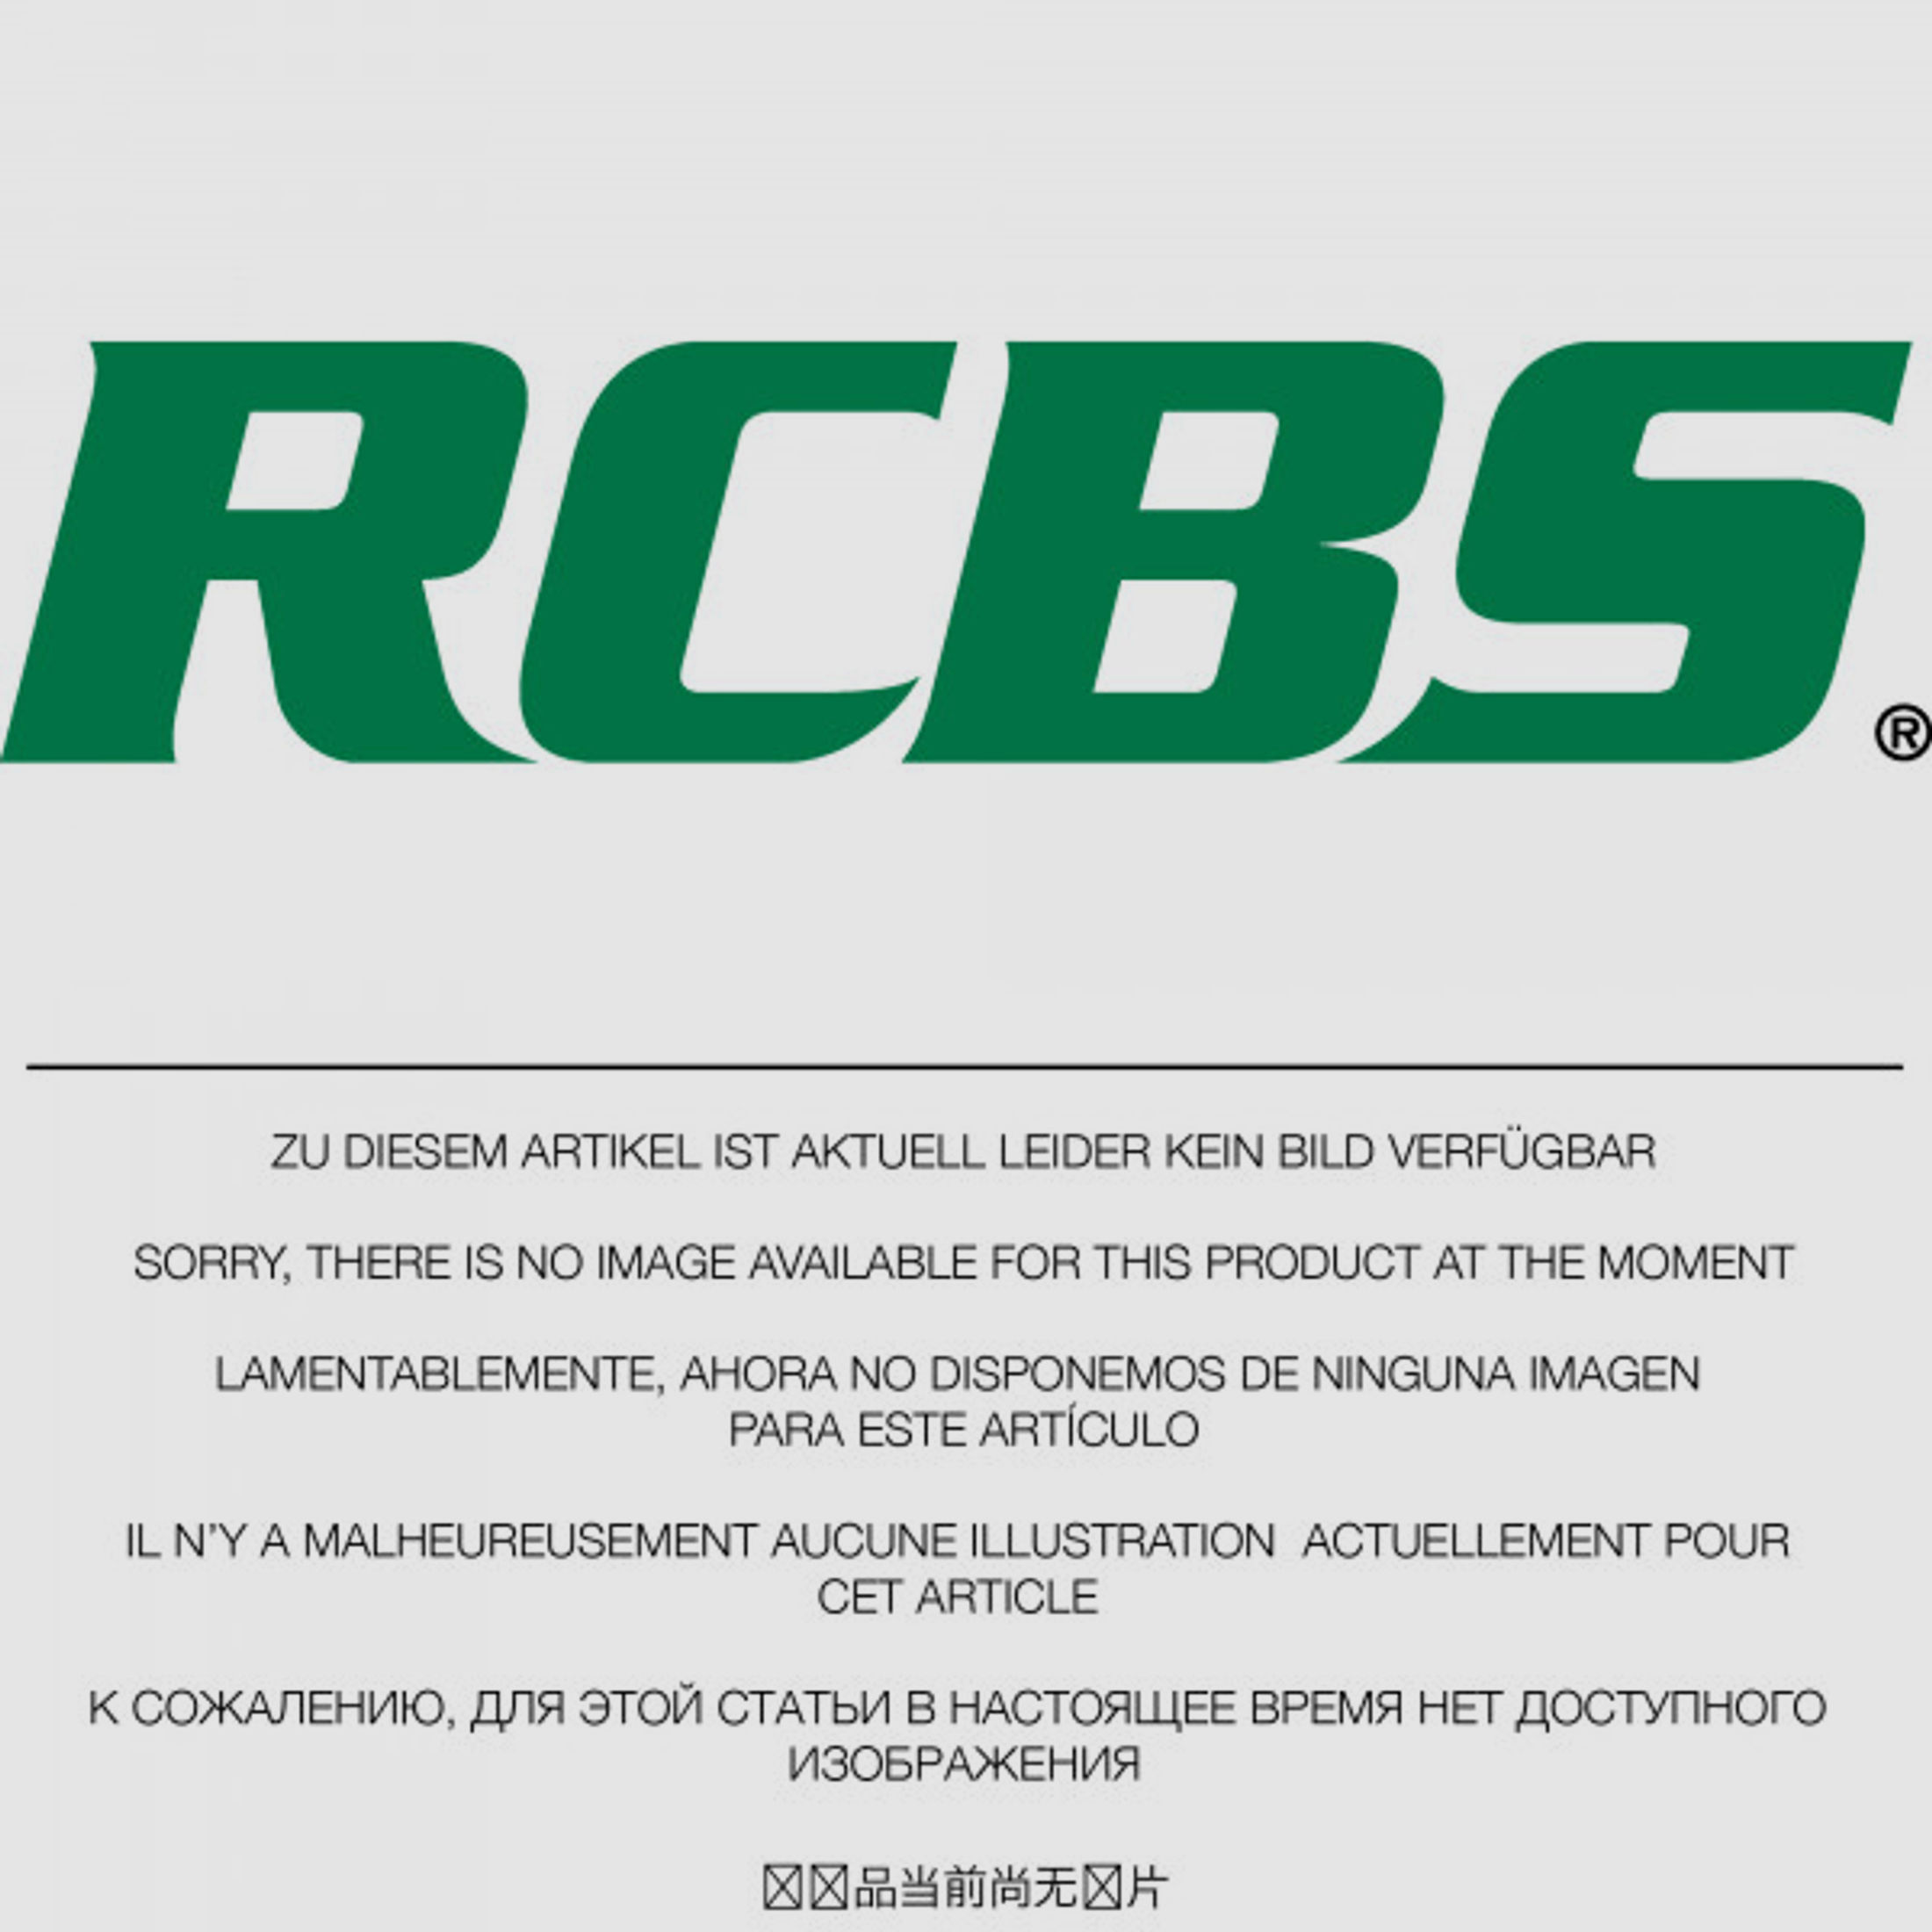 RCBS Lube-A-Matic Top Punch Geschoss Setzstempel Nr. 378 #82520